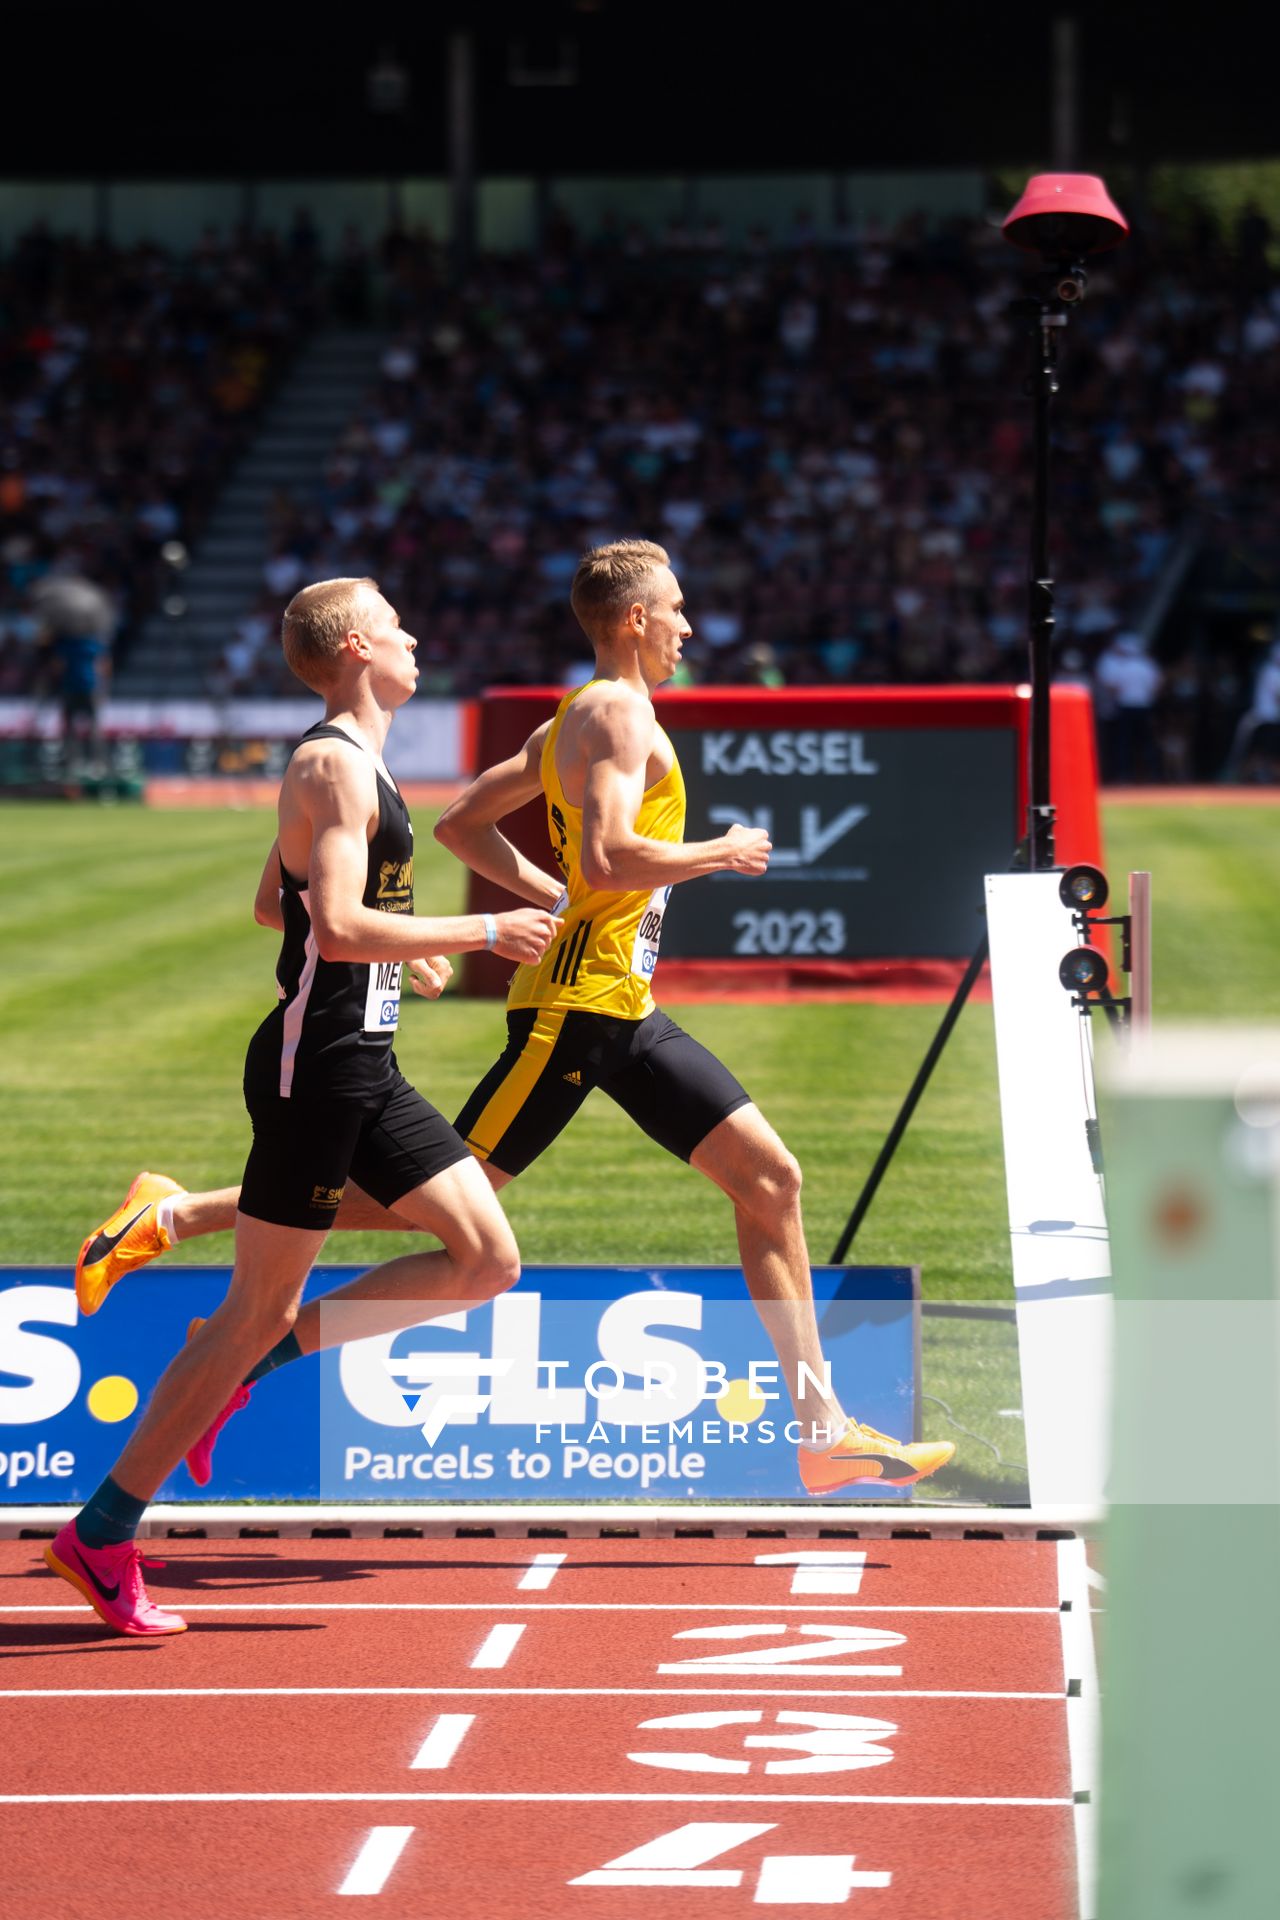 Luis Oberbeck (LG Goettingen), Emil Meggle (LG Stadtwerke Muenchen)während der 113. Deutschen Leichtathletik-Meisterschaften am 08.07.2023 im Auestadion in Kassel